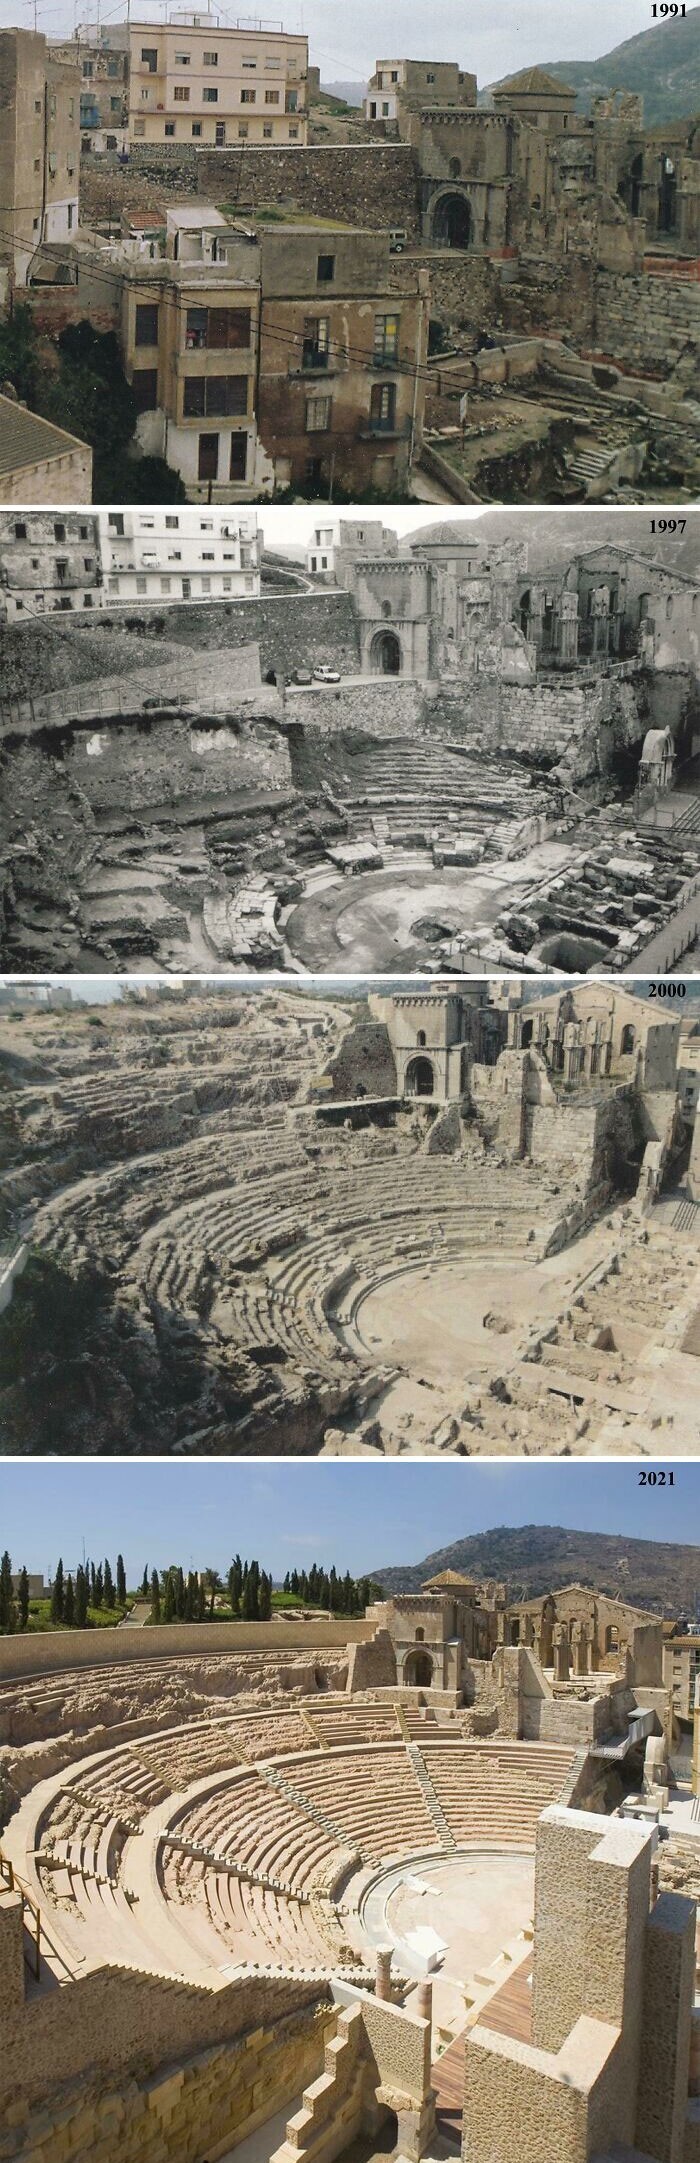 7. Римский театр Картахены (провинция Мурсия, Испания) в 1991 и 2021 годах